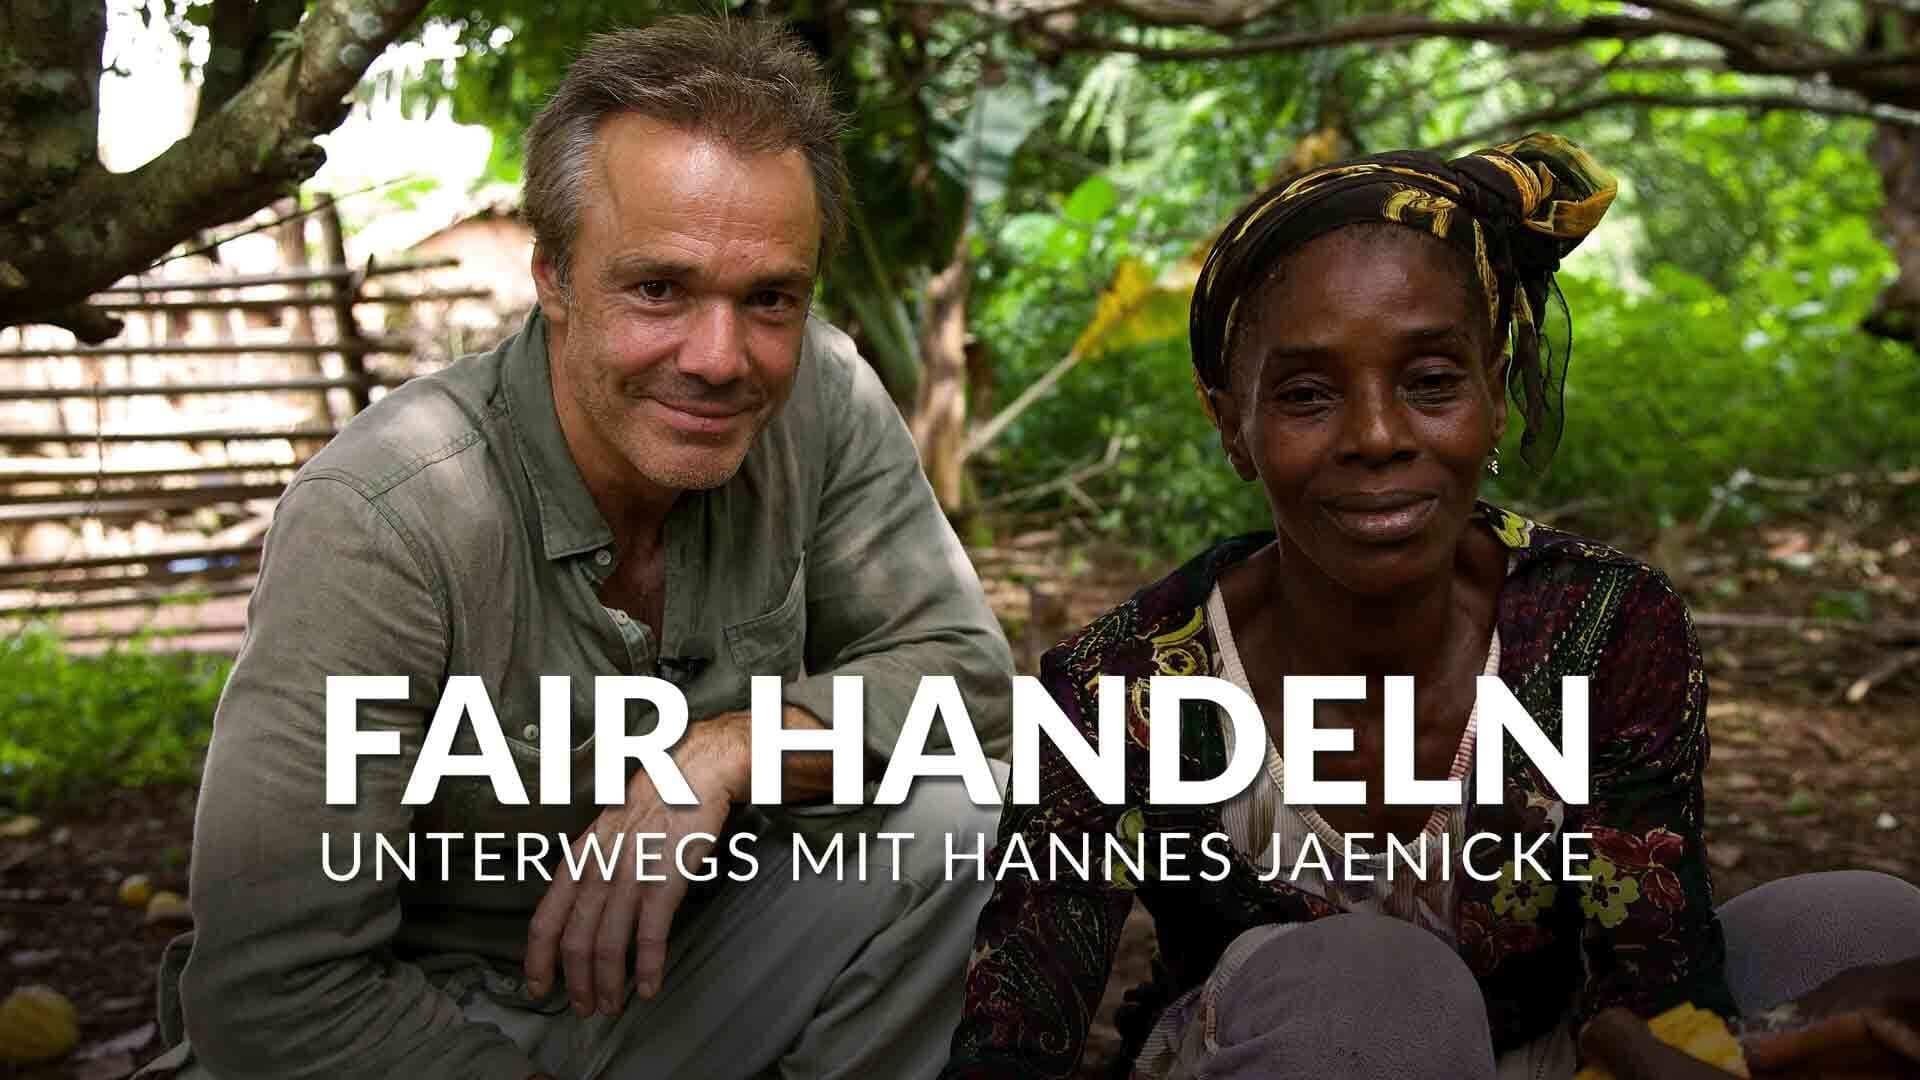 Fair handeln - Unterwegs mit Hannes Jaenicke backdrop